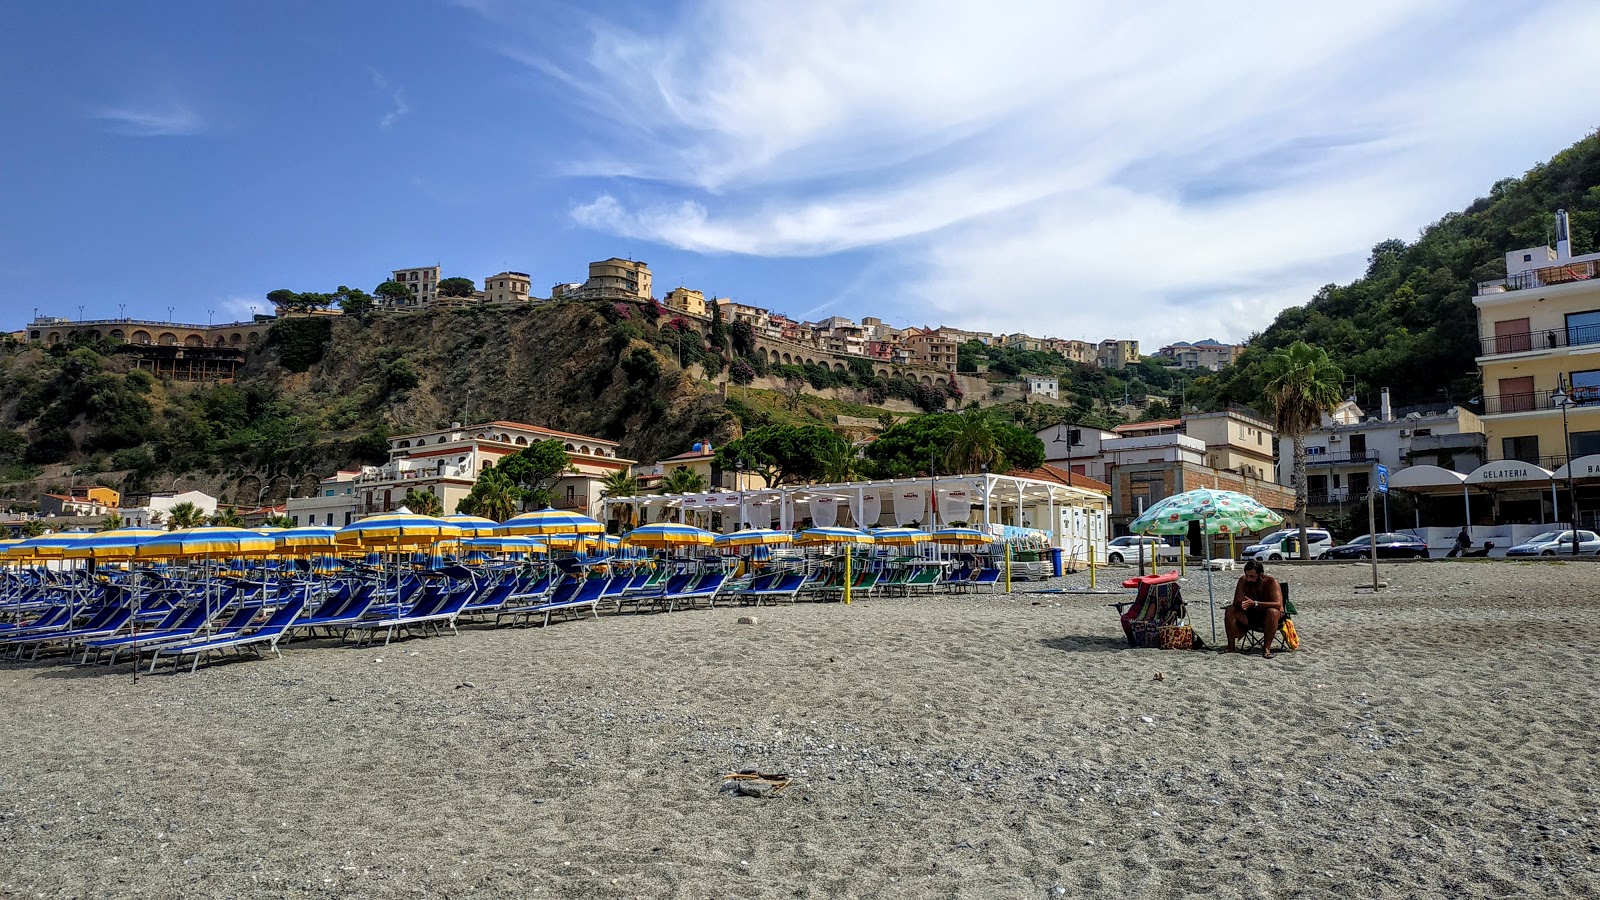 Fotografie cu Spiaggia Di Scilla cu nivelul de curățenie in medie